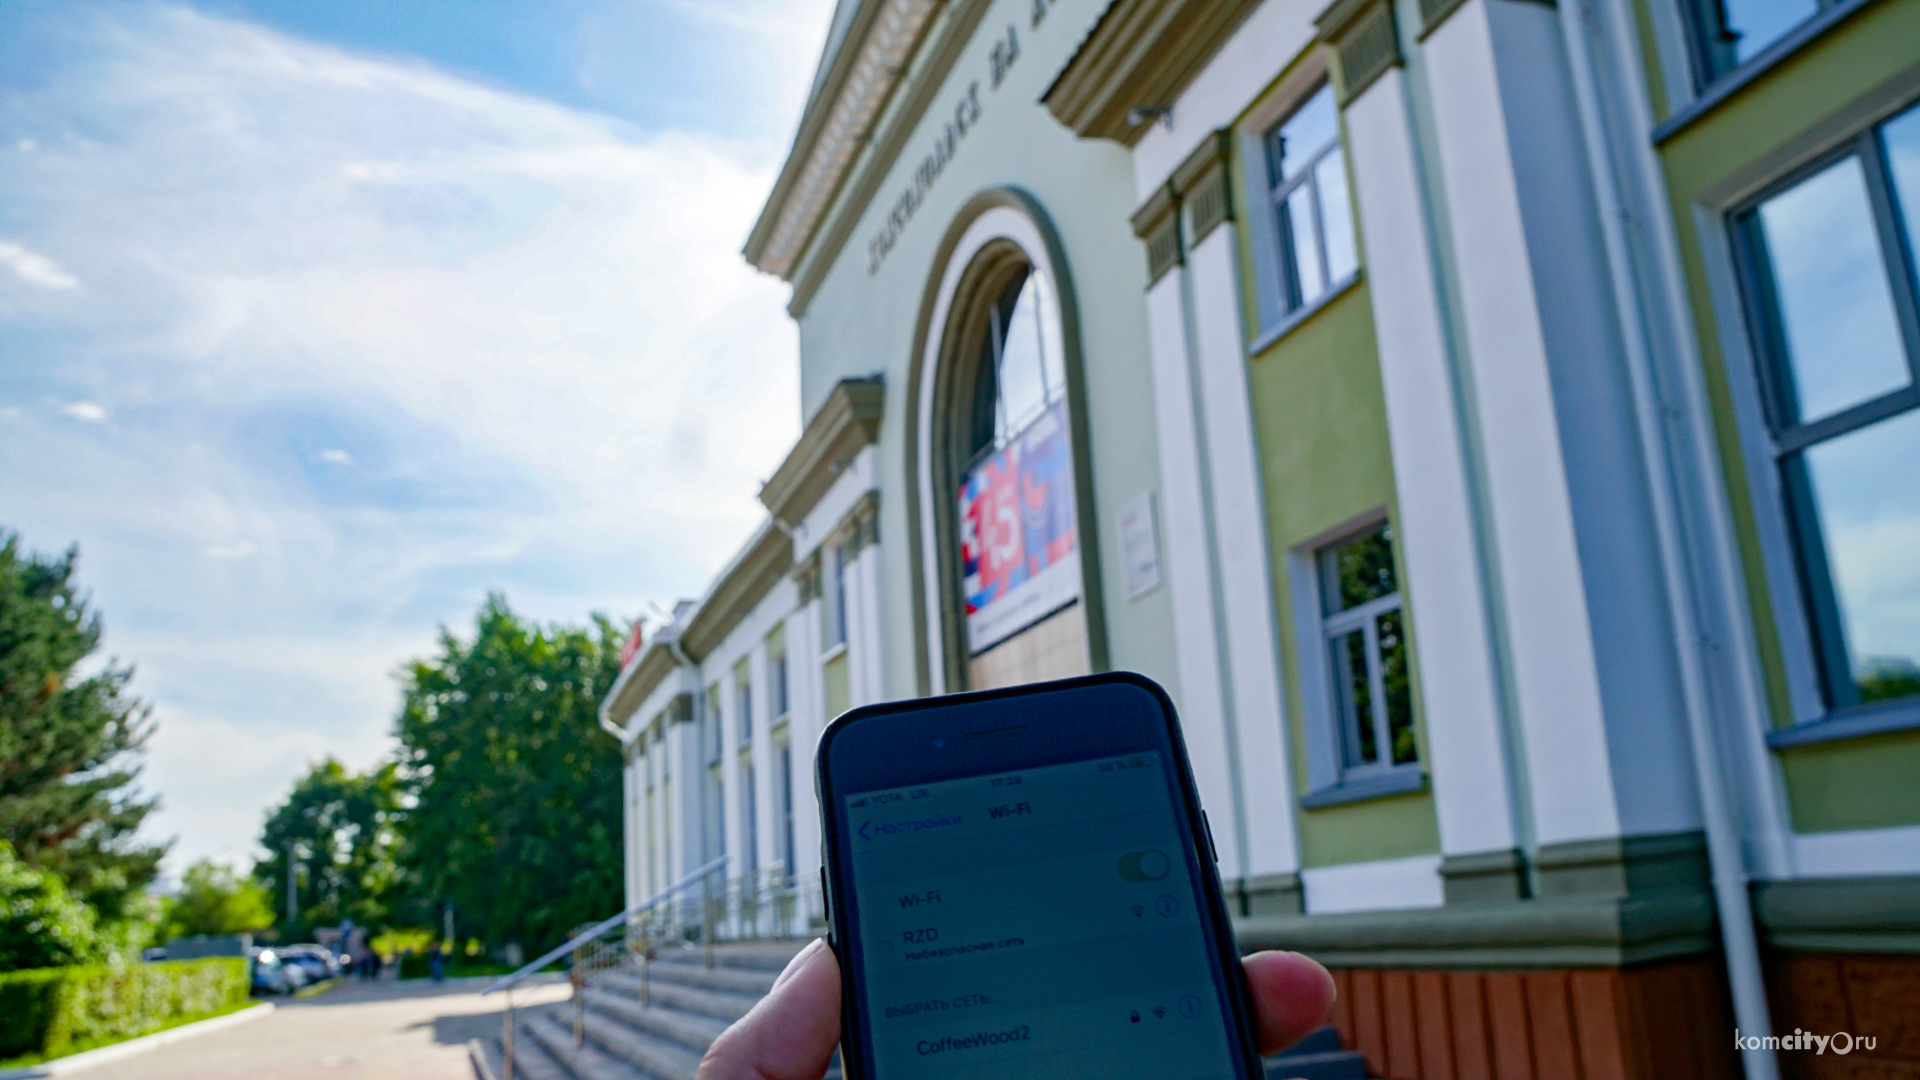 ЖД-вокзал Комсомольска-на-Амуре оснастили бесплатным Wi-Fi